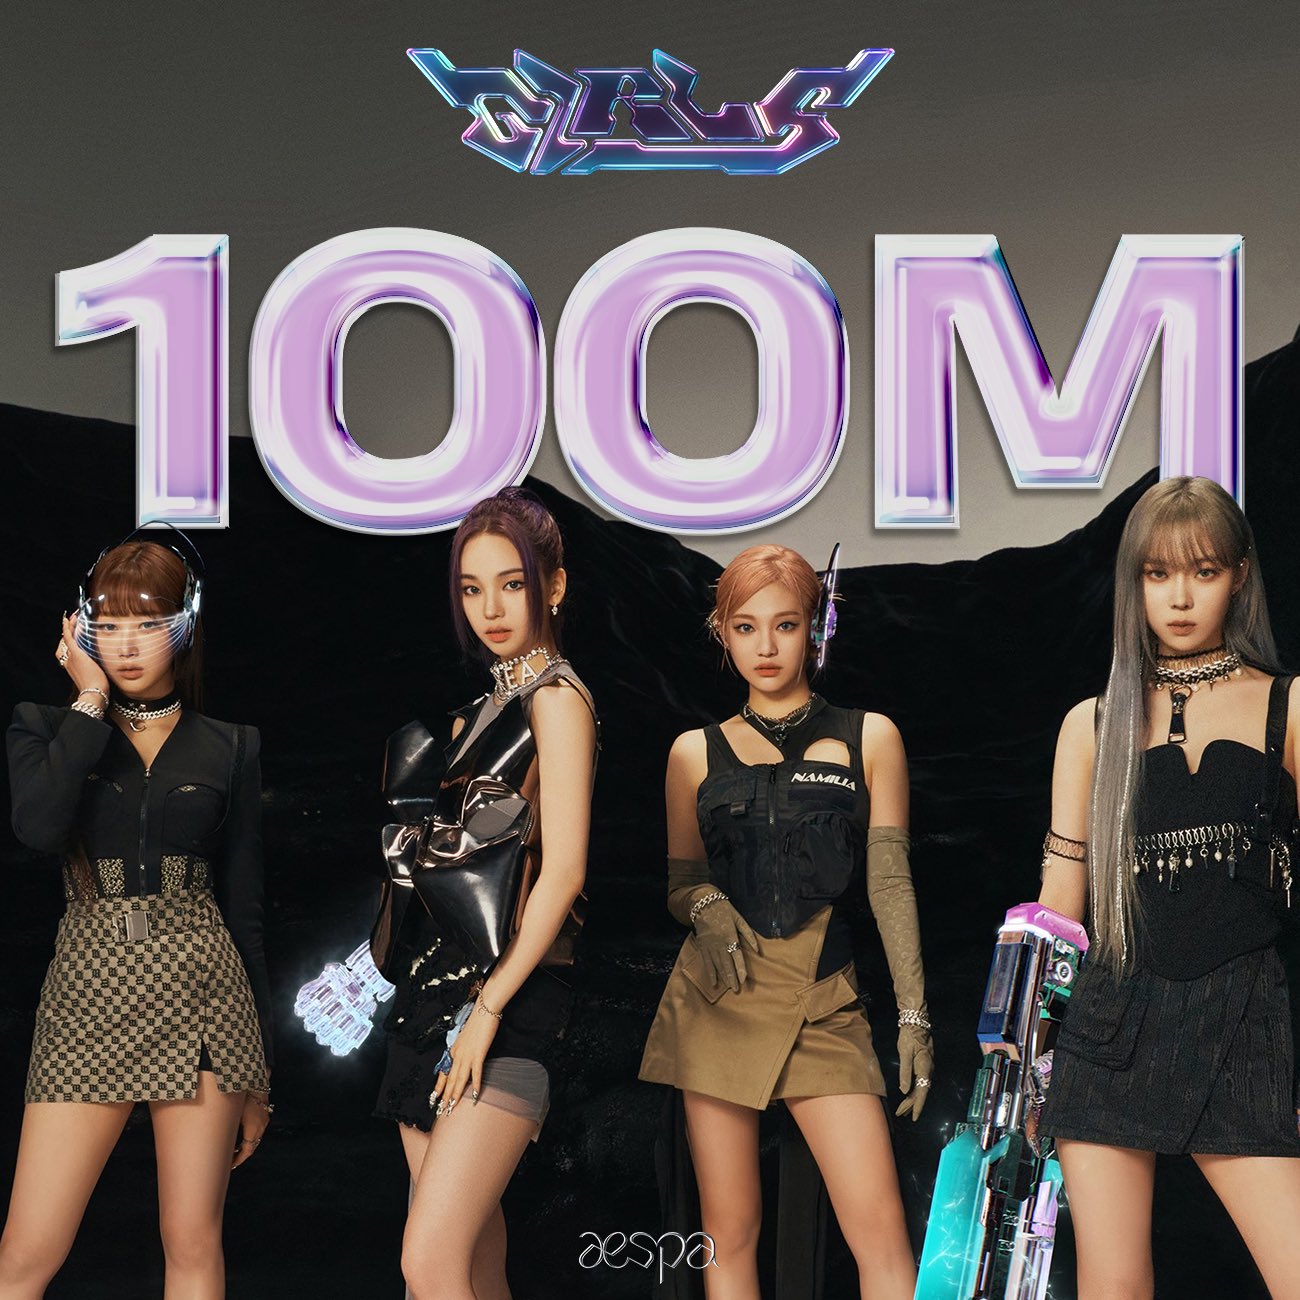 Poster chúc mừng MV “Girls” của aespa đạt được cột mốc 100 triệu lượt xem trên Youtube. Ảnh: @aespa_official